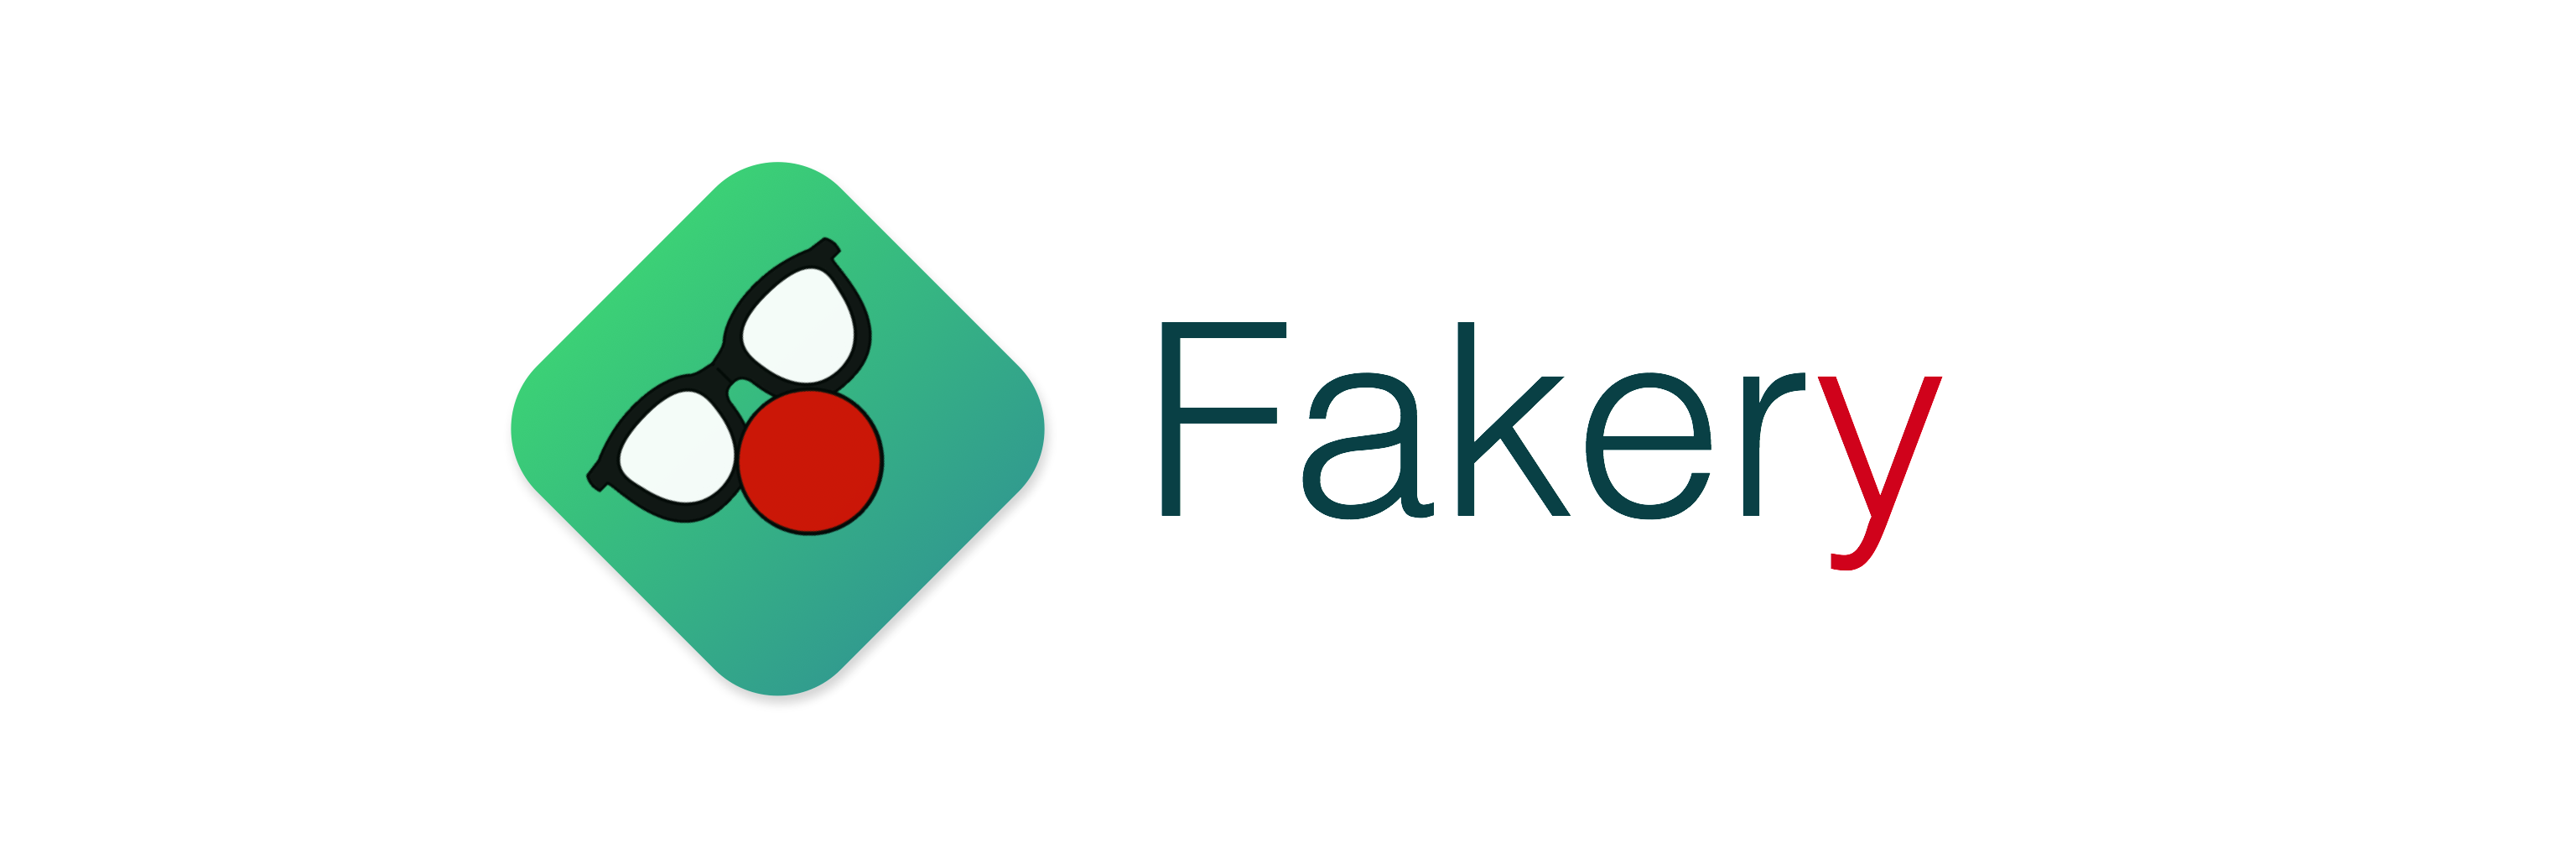 Fakery logo